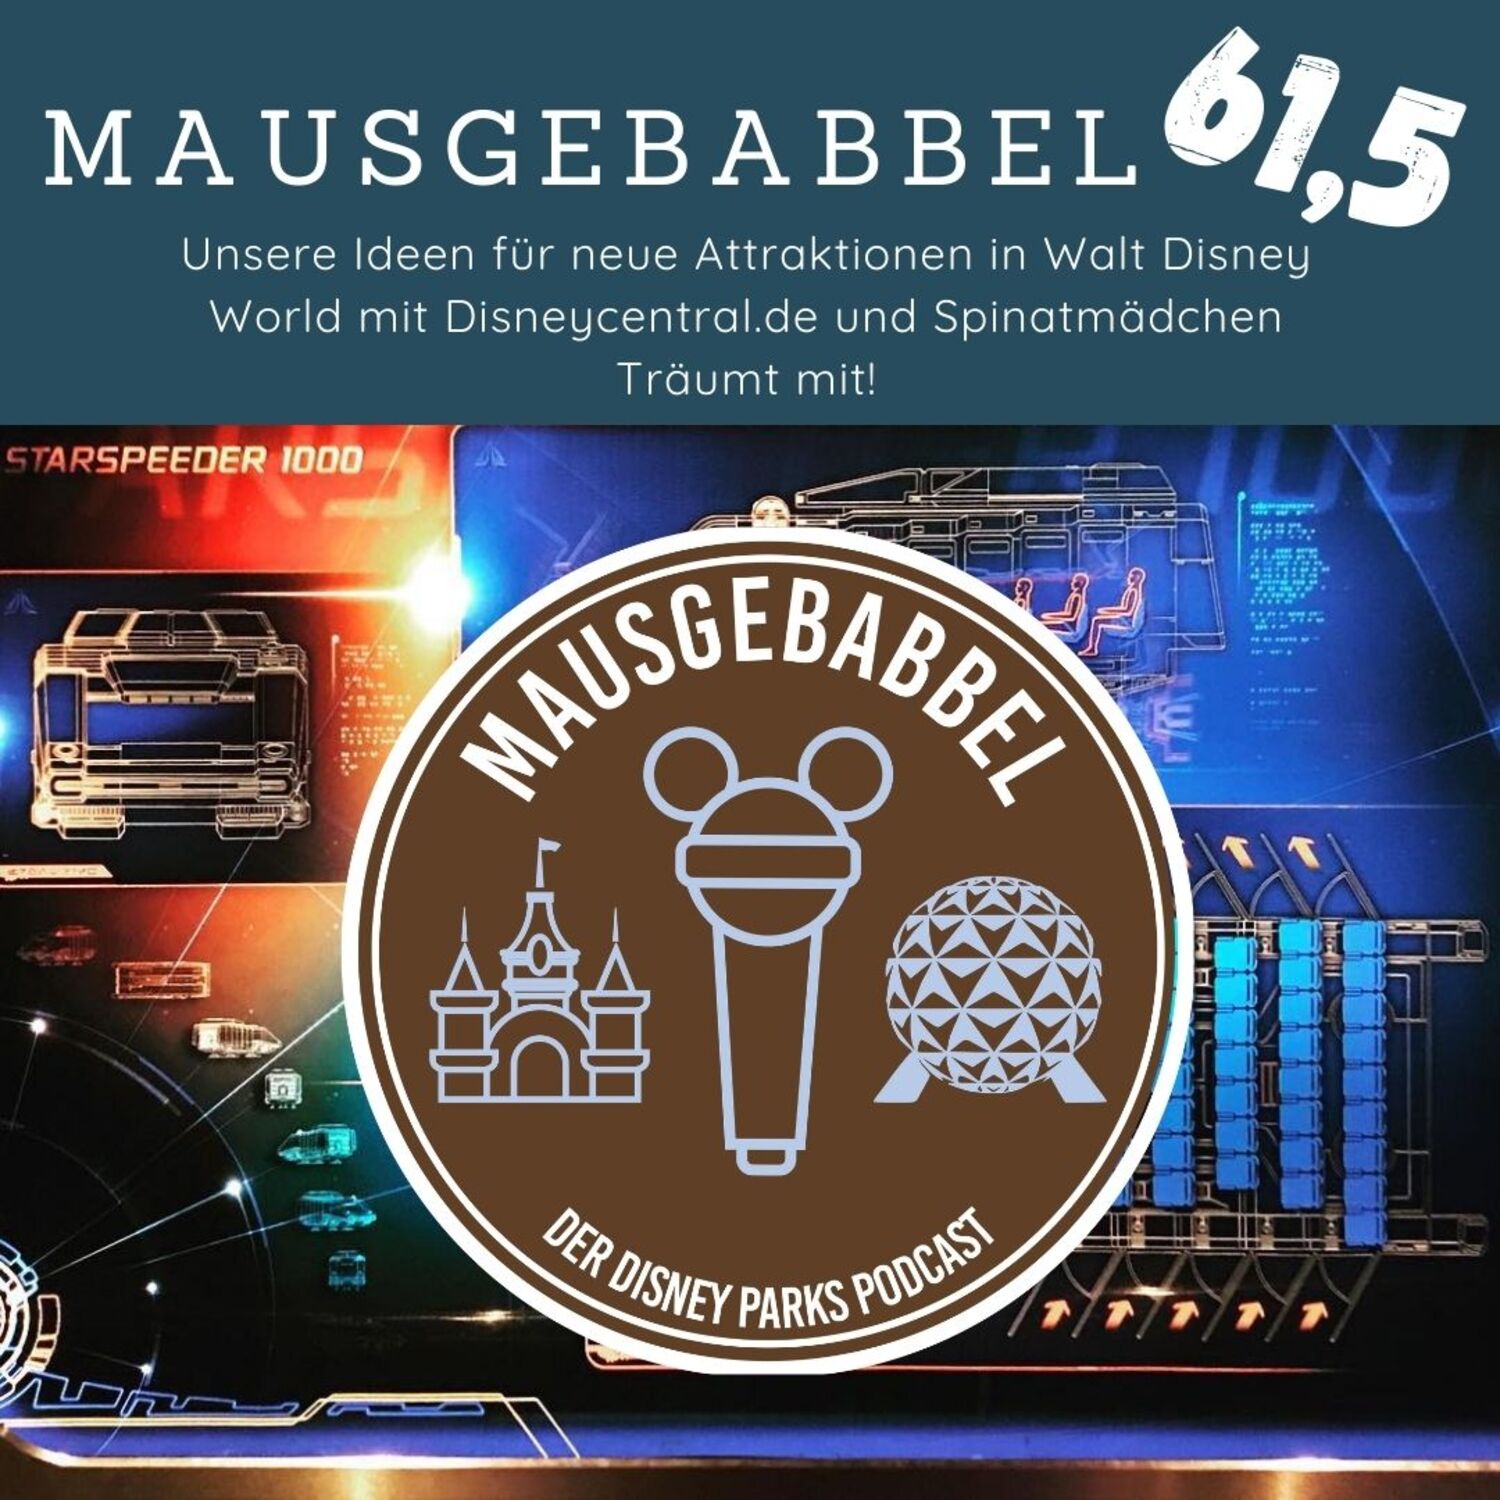 Cover Mausgebabbel 61,5 - Neue Attraktionen für Walt Disney World